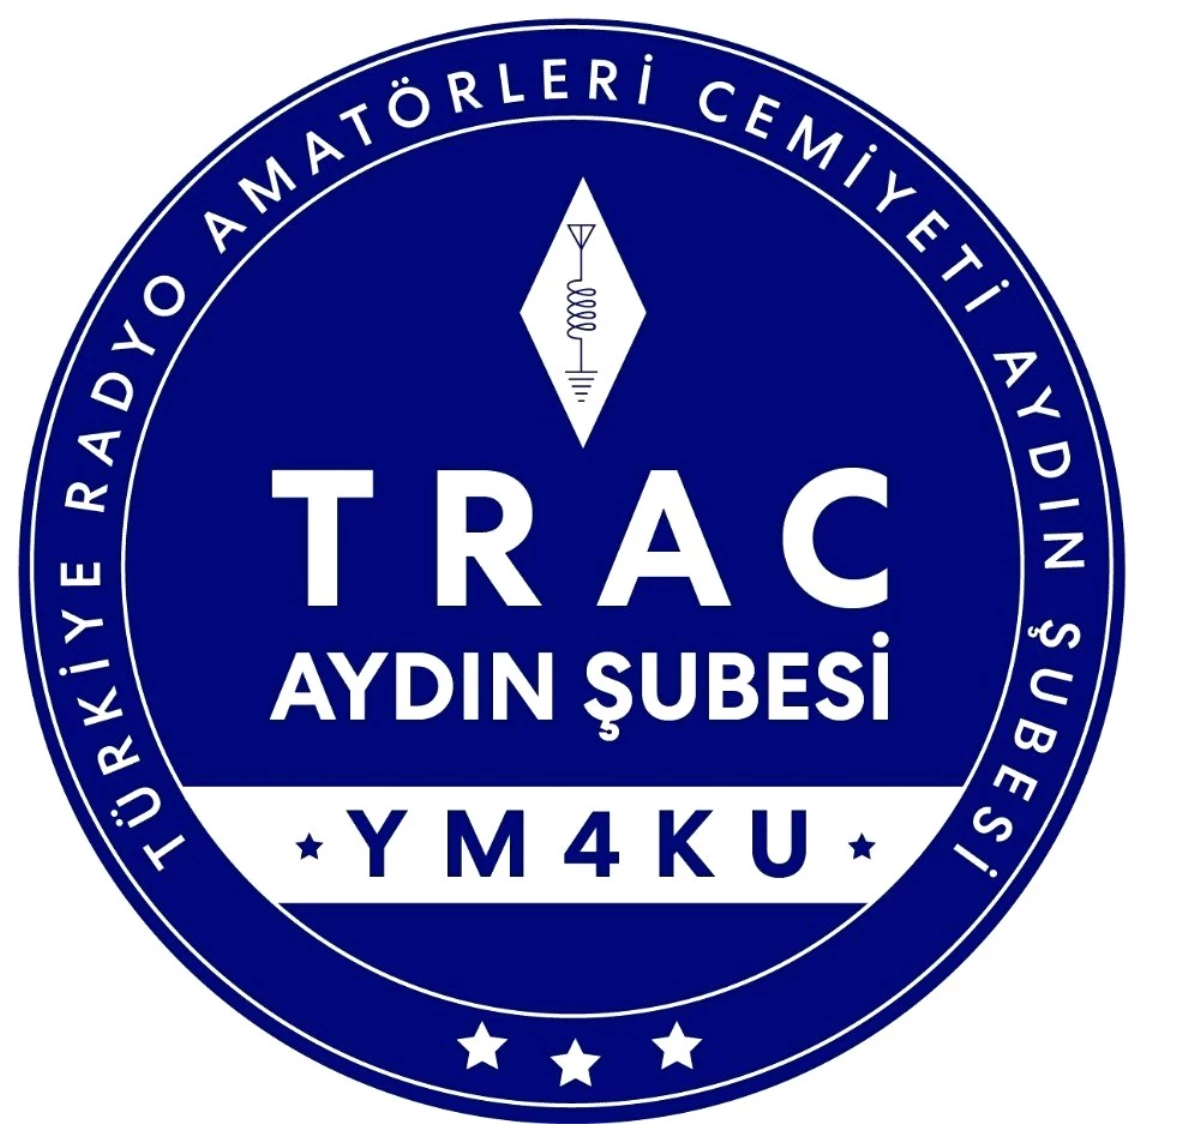 TRAC Aydın Şubesinden amatör telsizcilere yönelik eleştirilere tepki